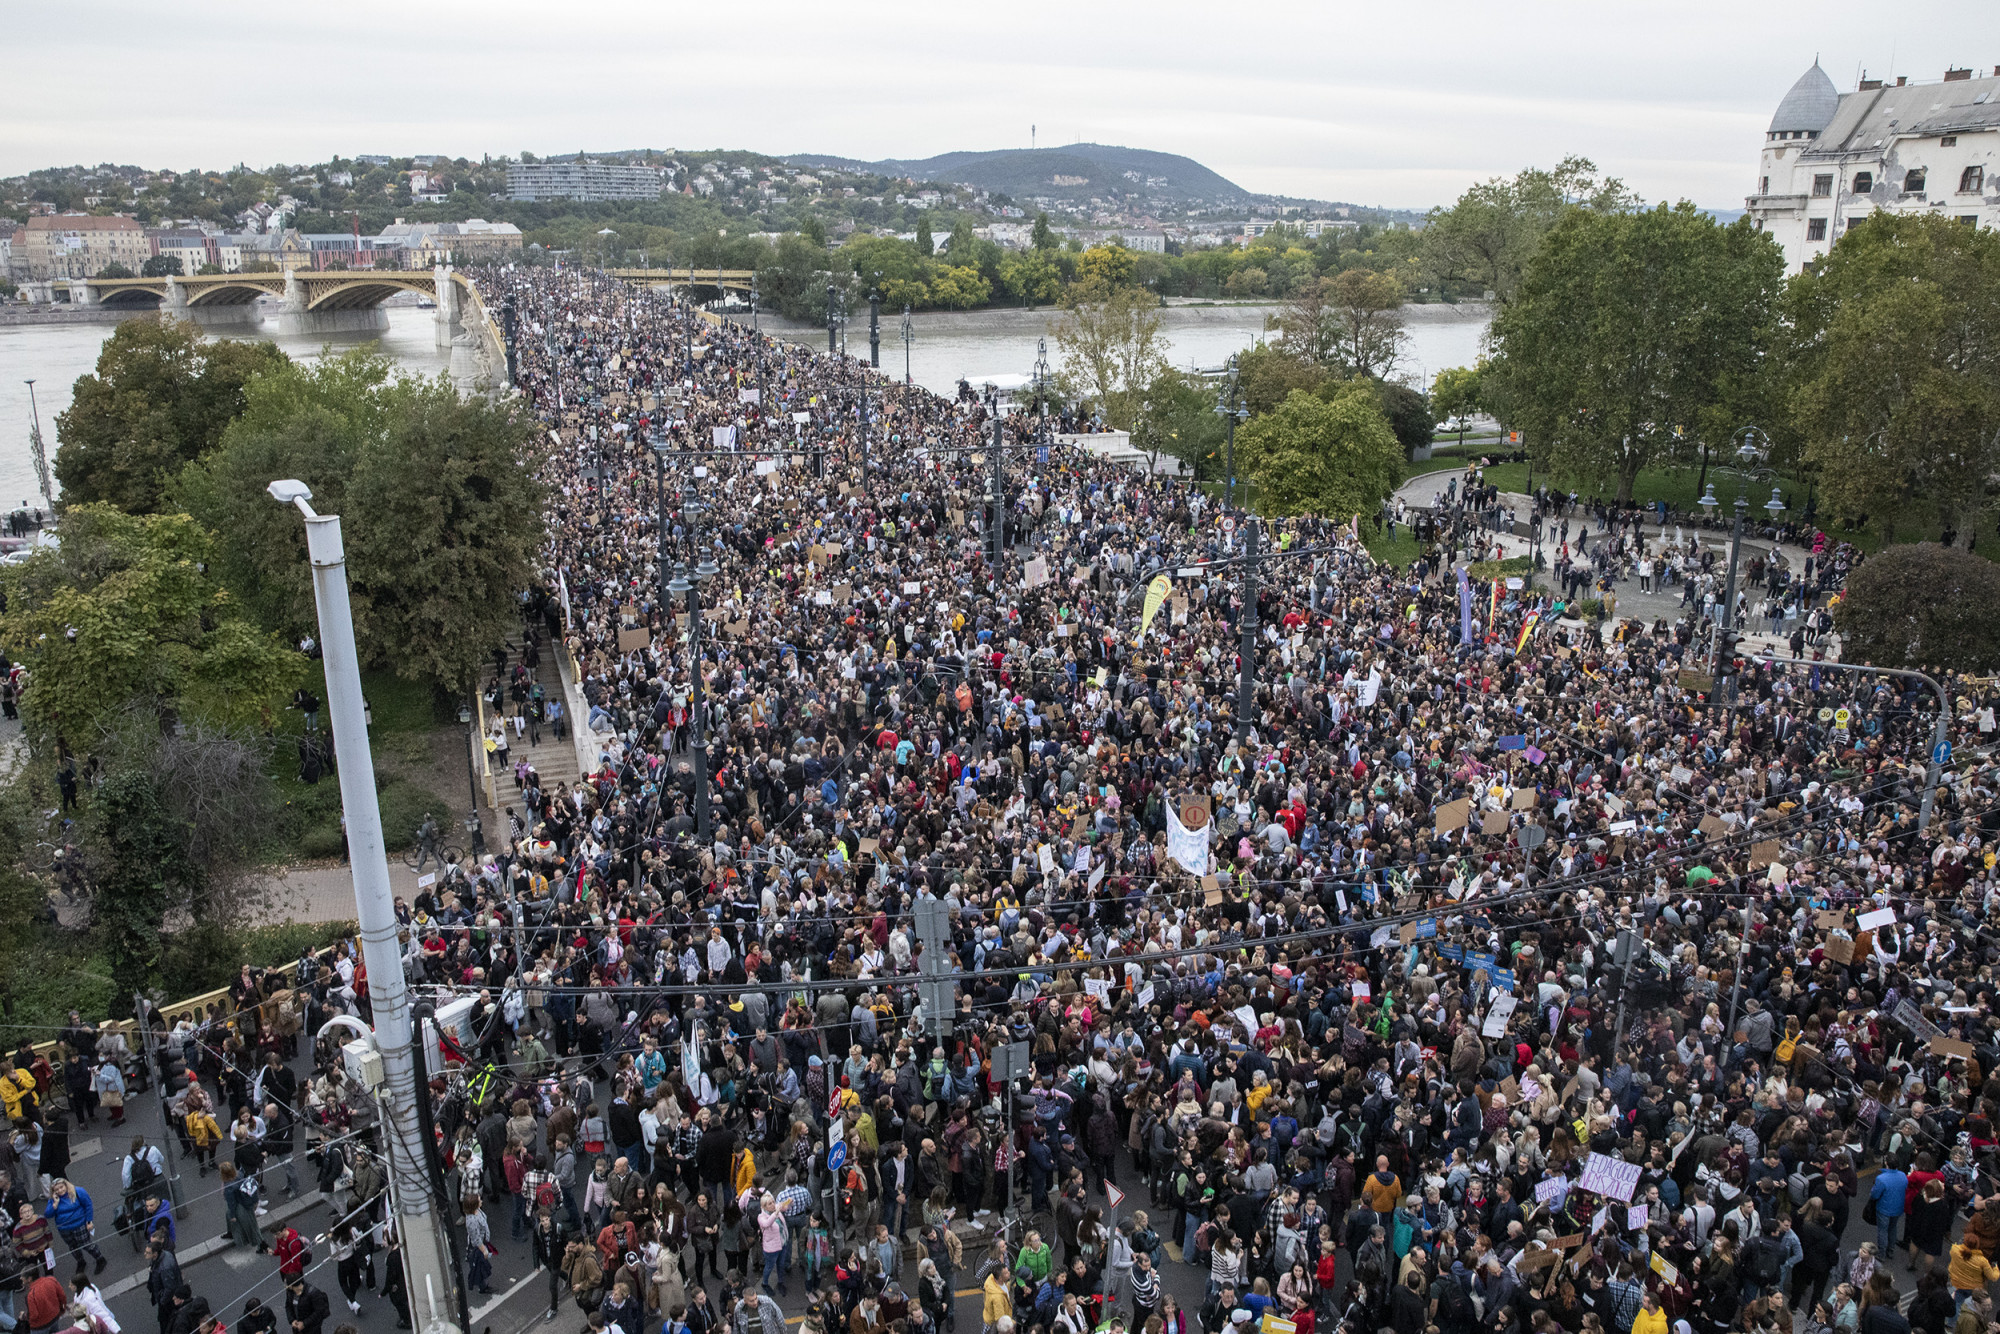 Viktor, Viktor, tűnj a sulinkból! – 40 ezren tüntettek a közoktatásért és a tanárokért a Kossuth téren